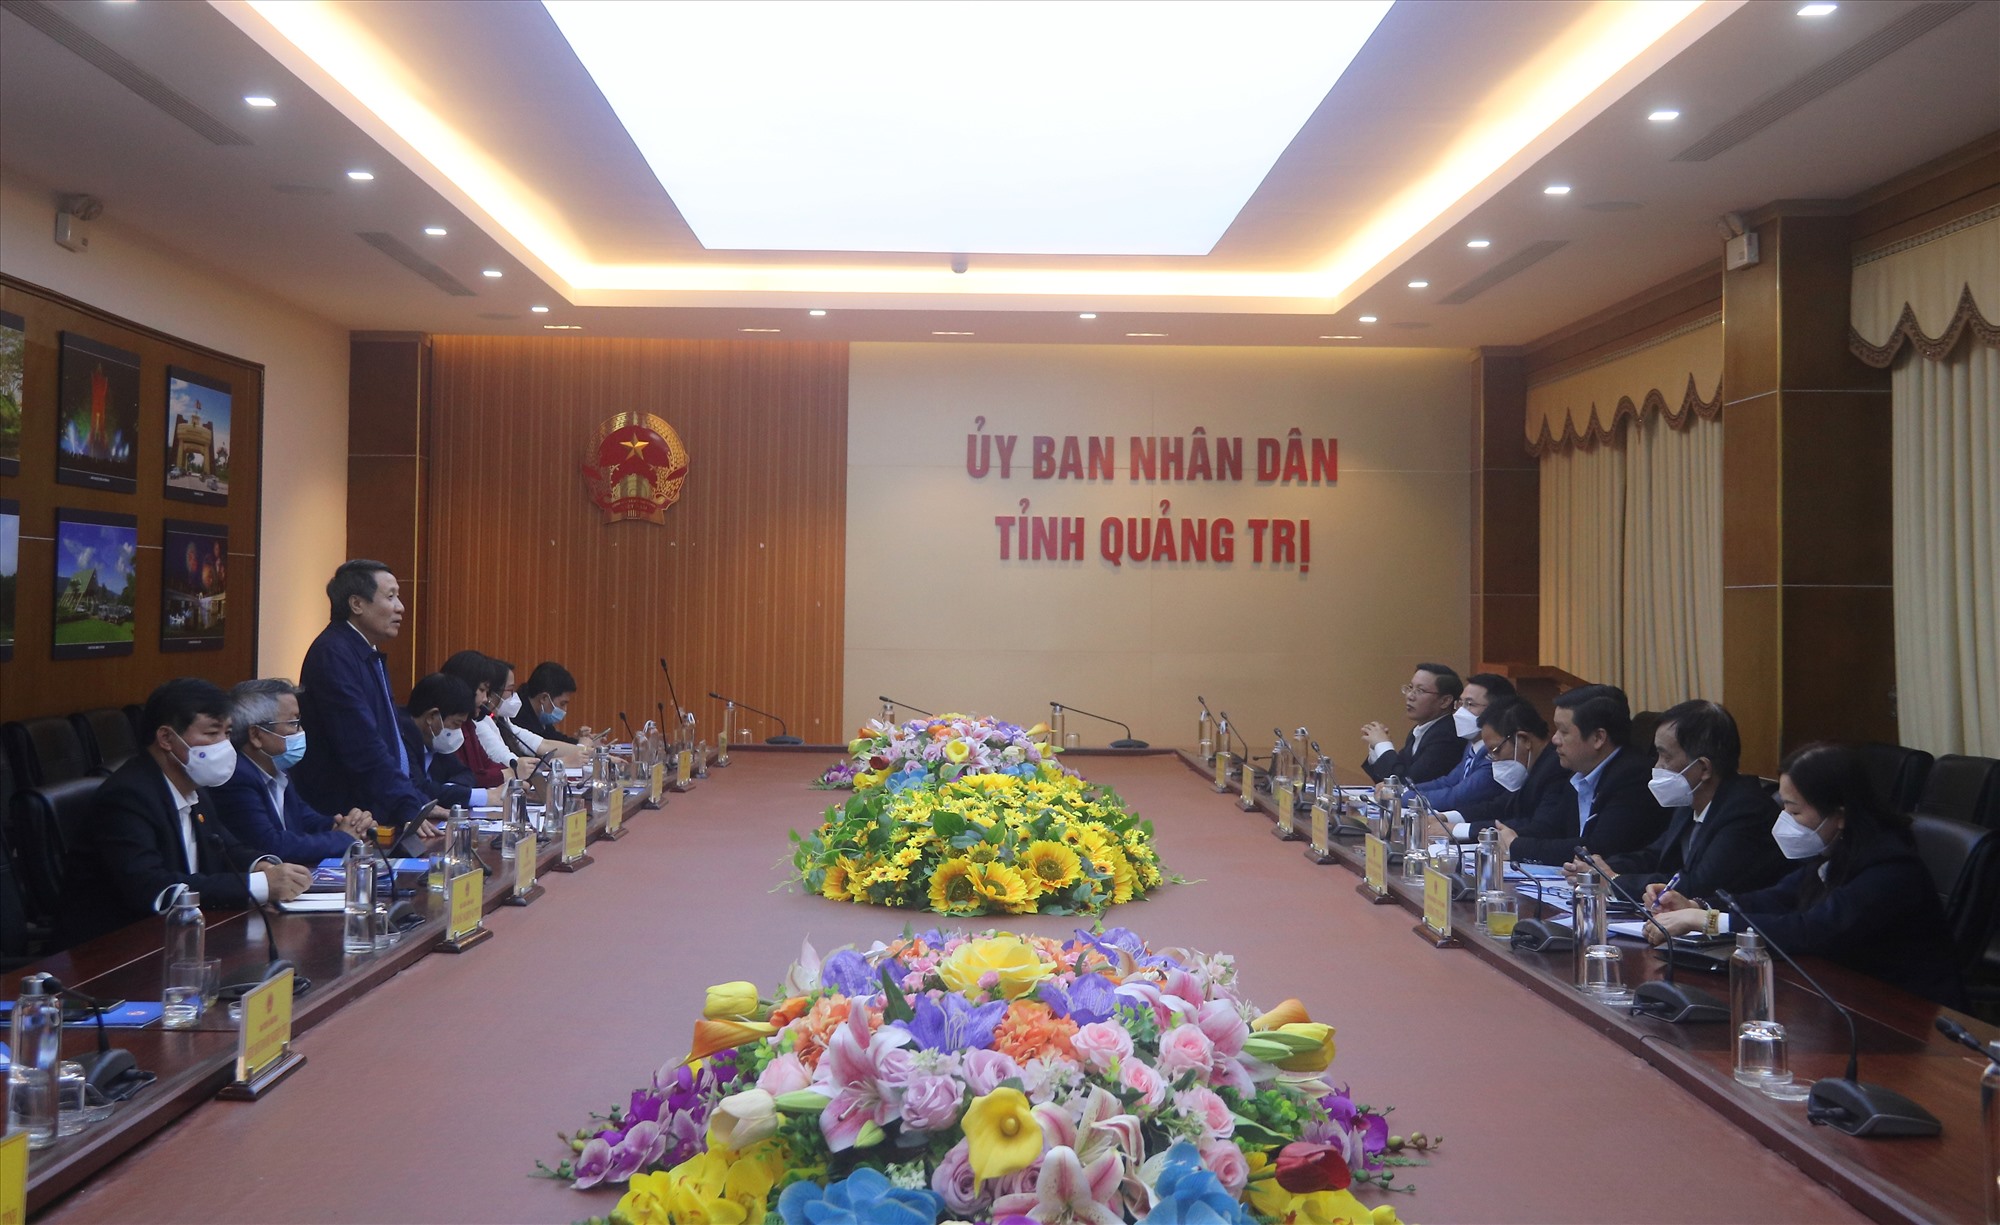 Hội đồng Trẻ em tỉnh Quảng Trị giai đoạn 2021 - 2025 tại buổi lễ ra mắt - Ảnh: T.L